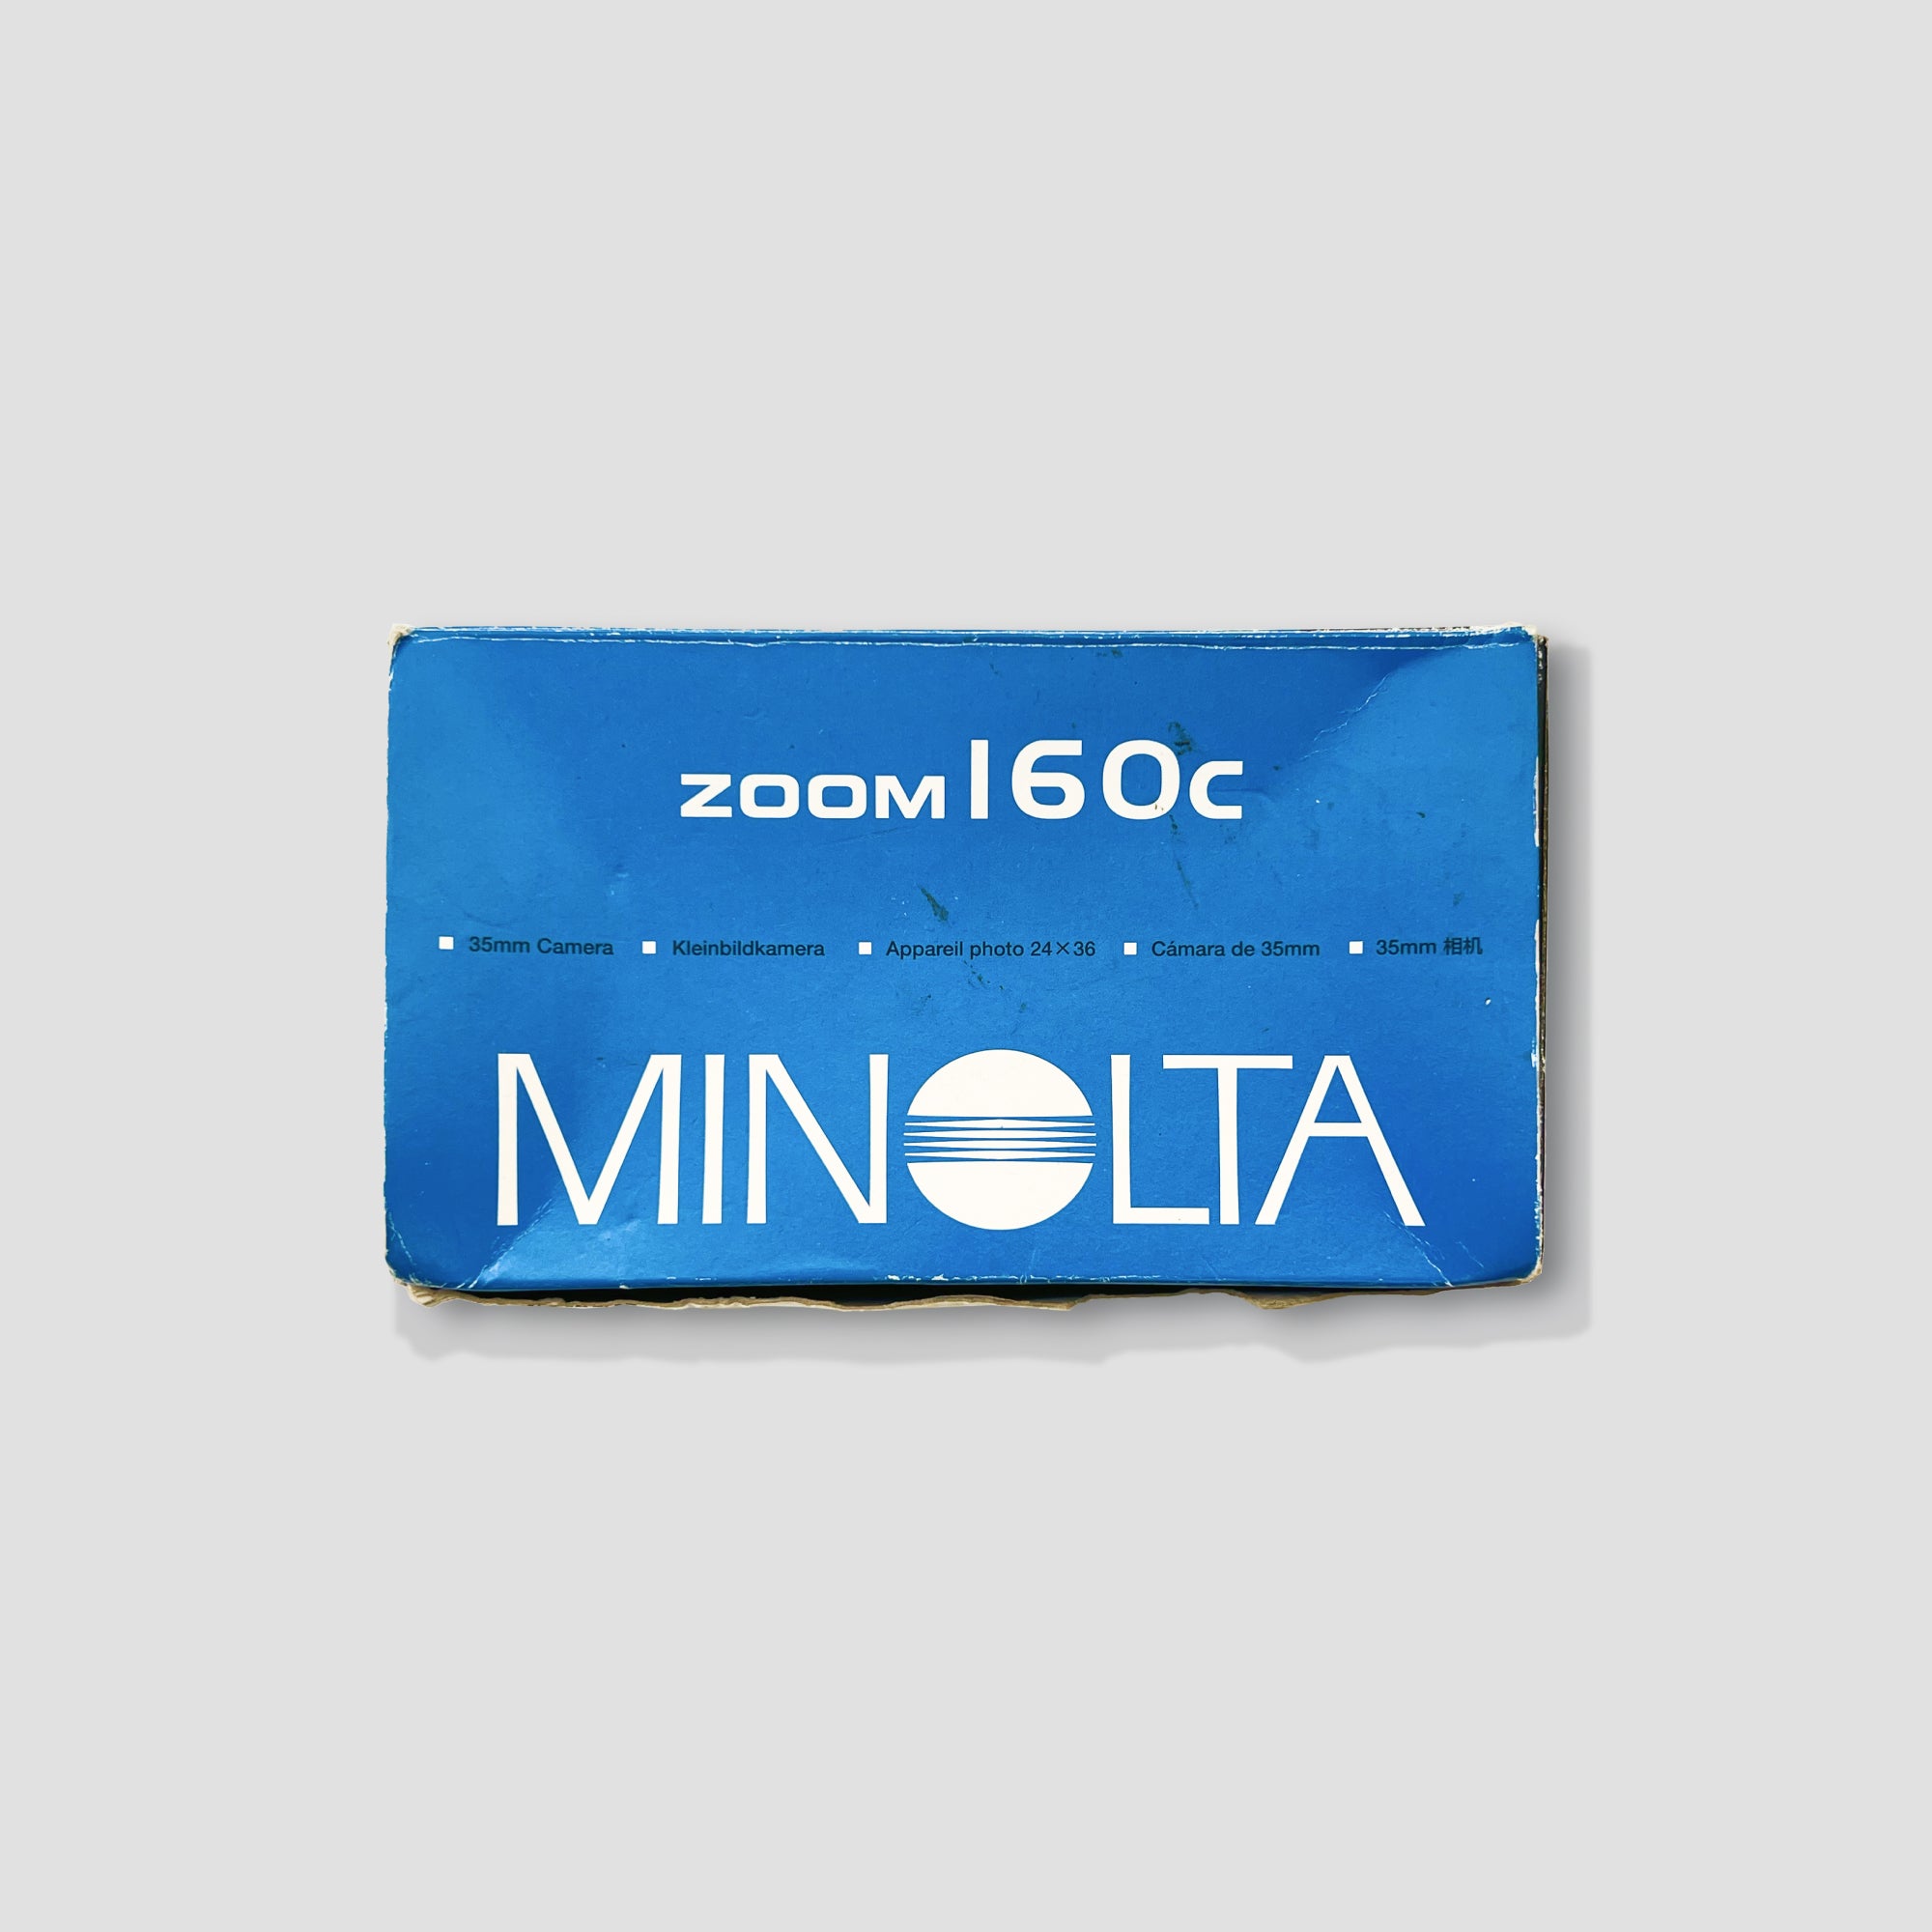 Minolta Riva Zoom 160c